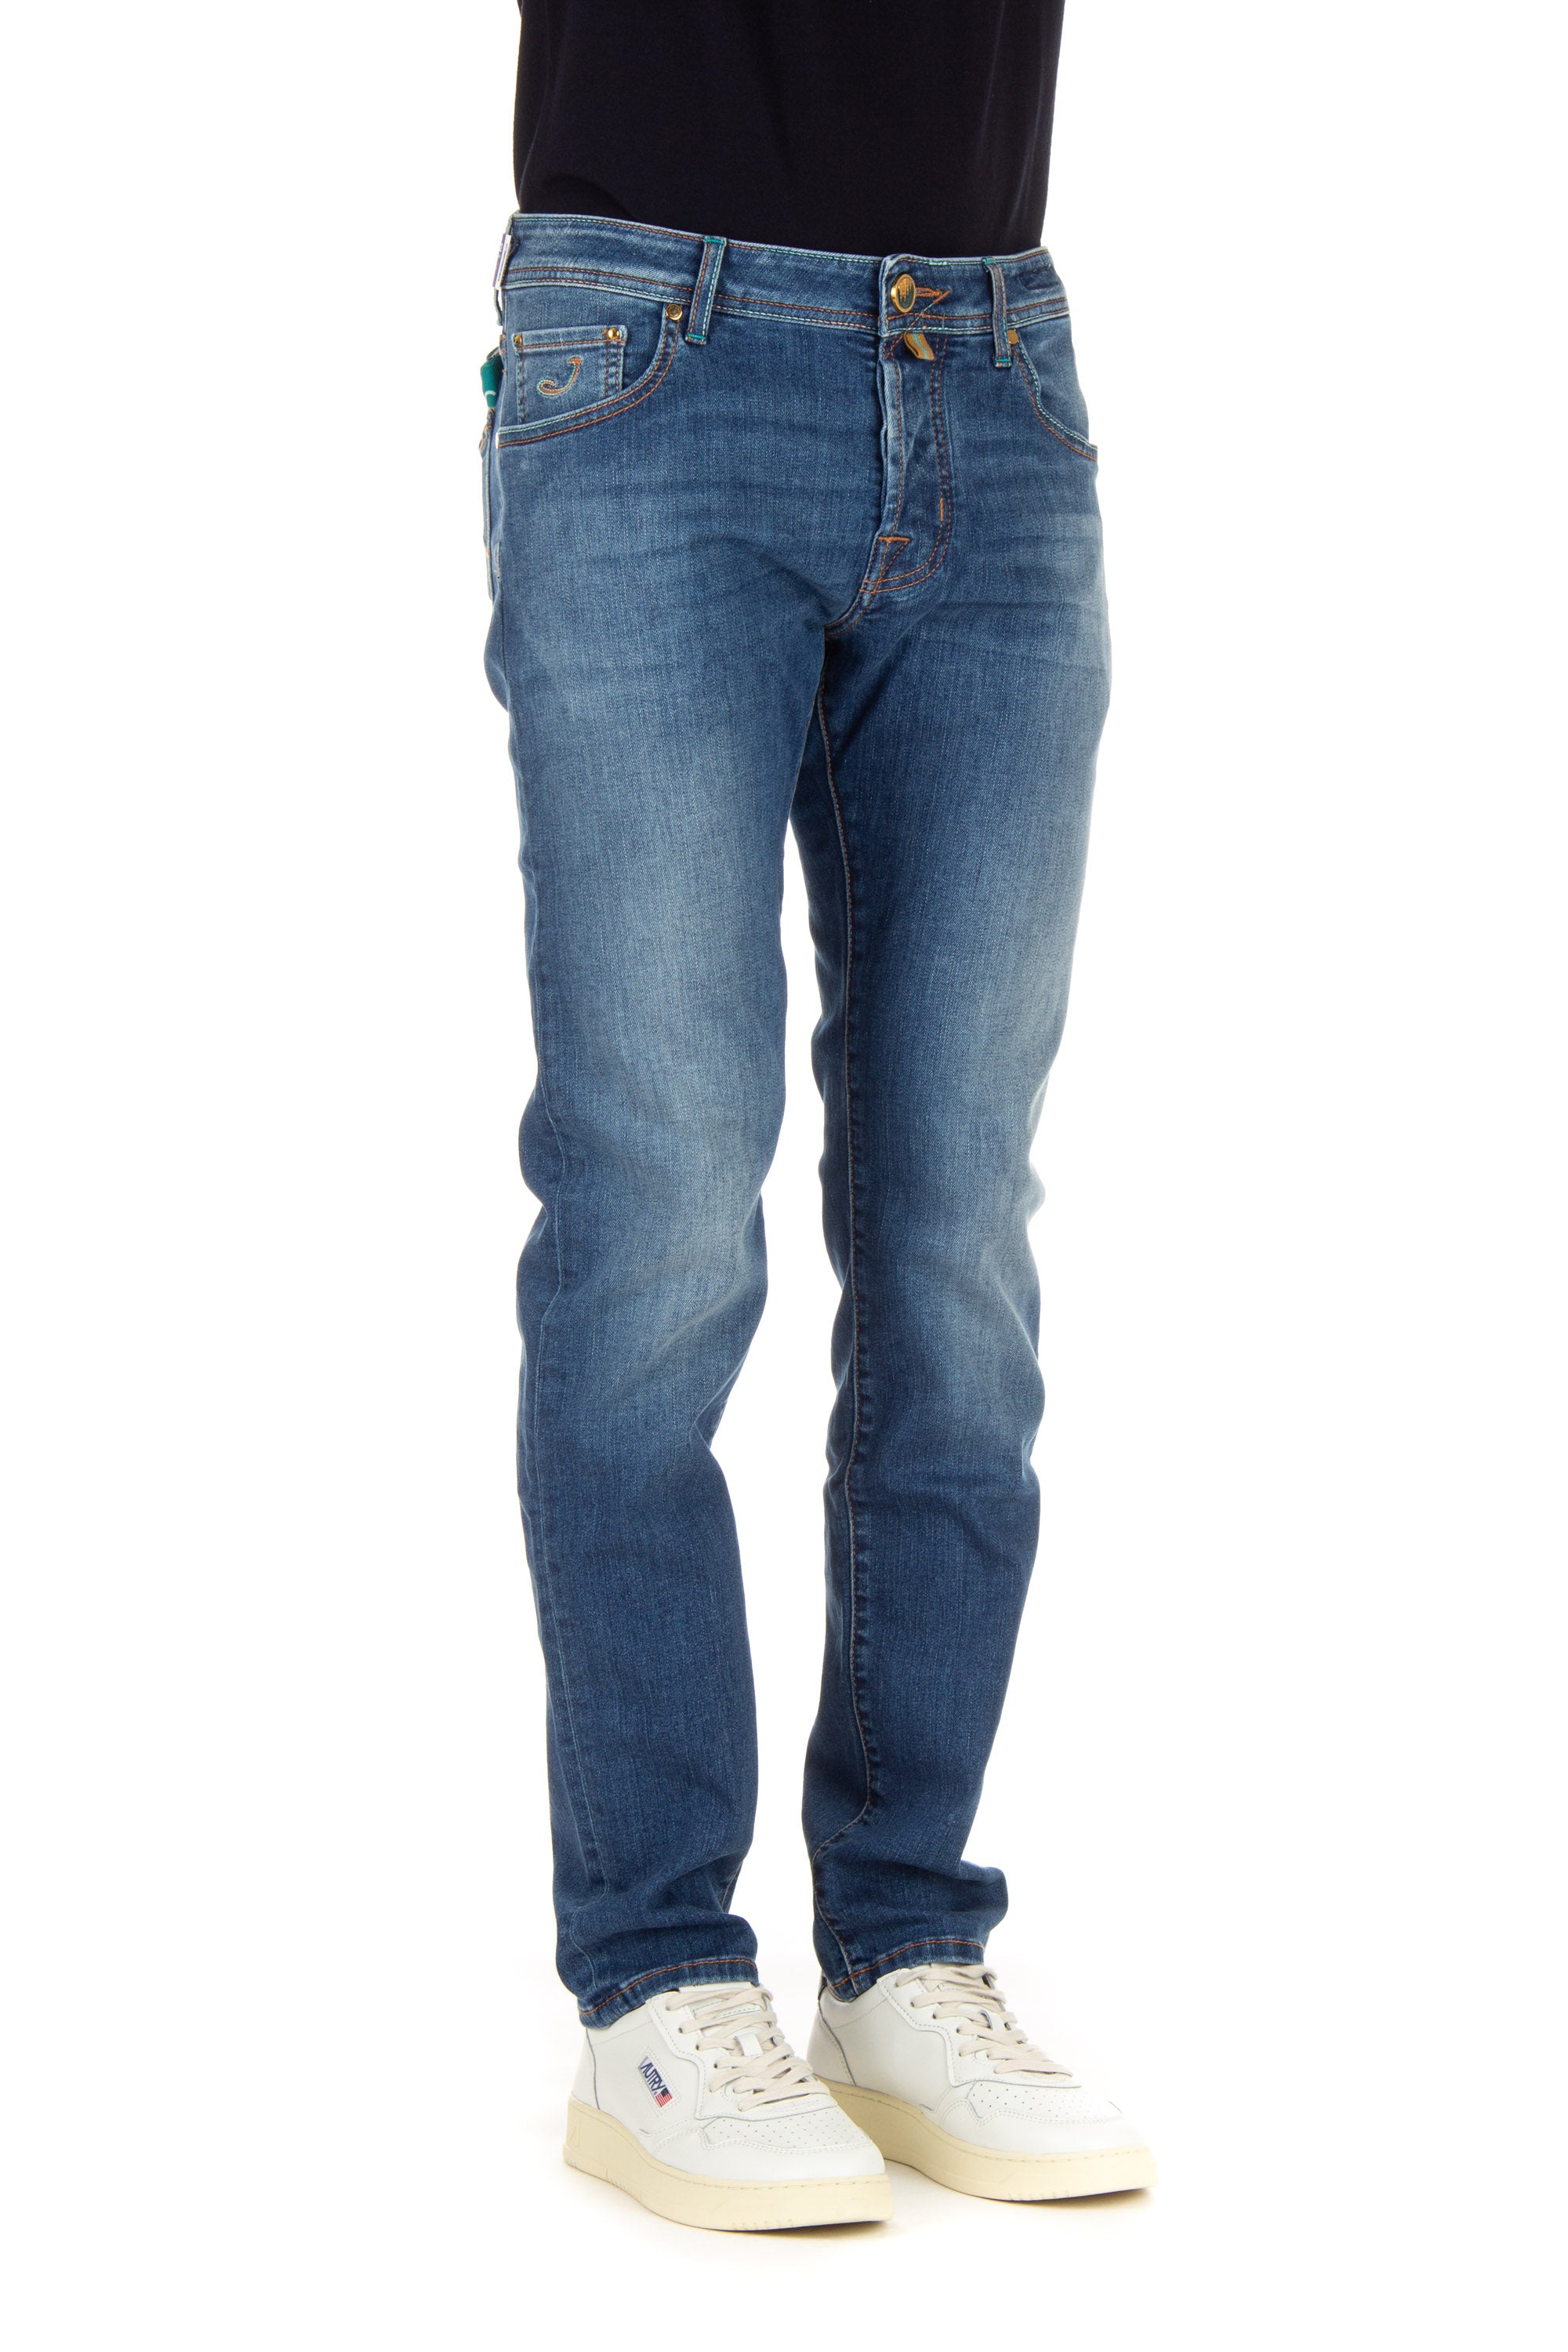 Jeans in Sonderedition mit Duomo di Milano-Etikett, helle Waschung, Slim-Fit-Schnitt